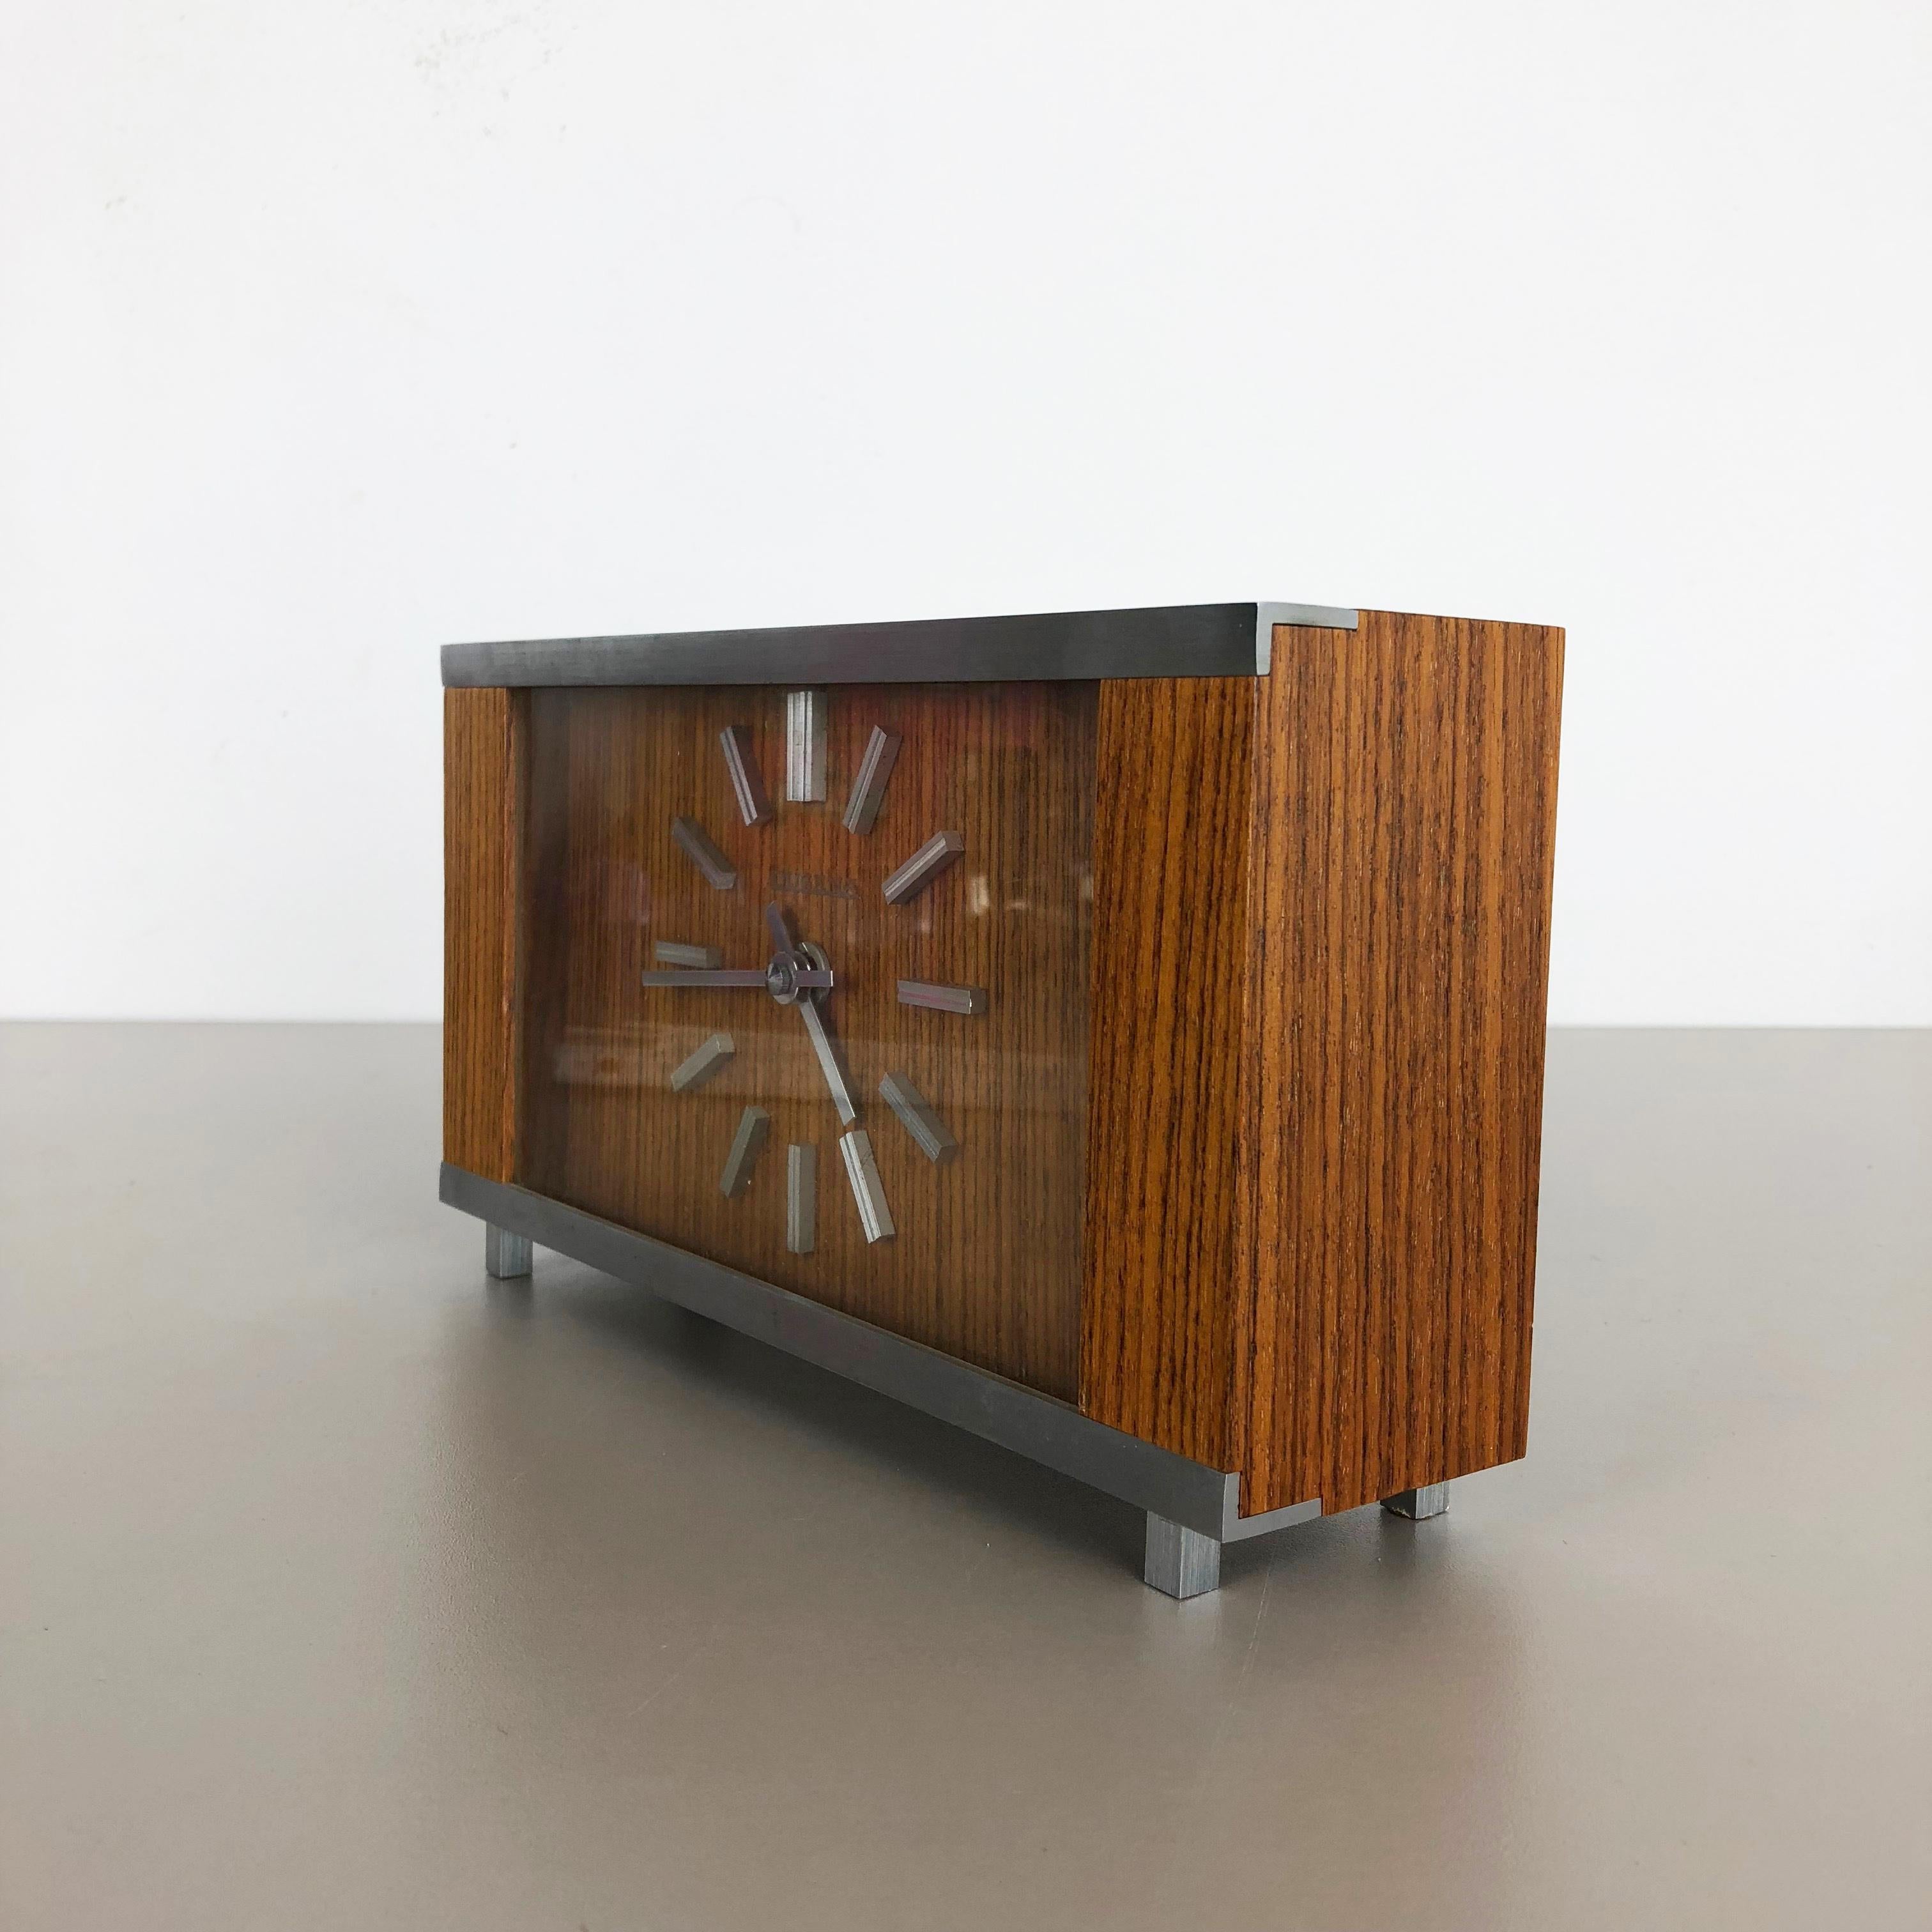 designer table clock